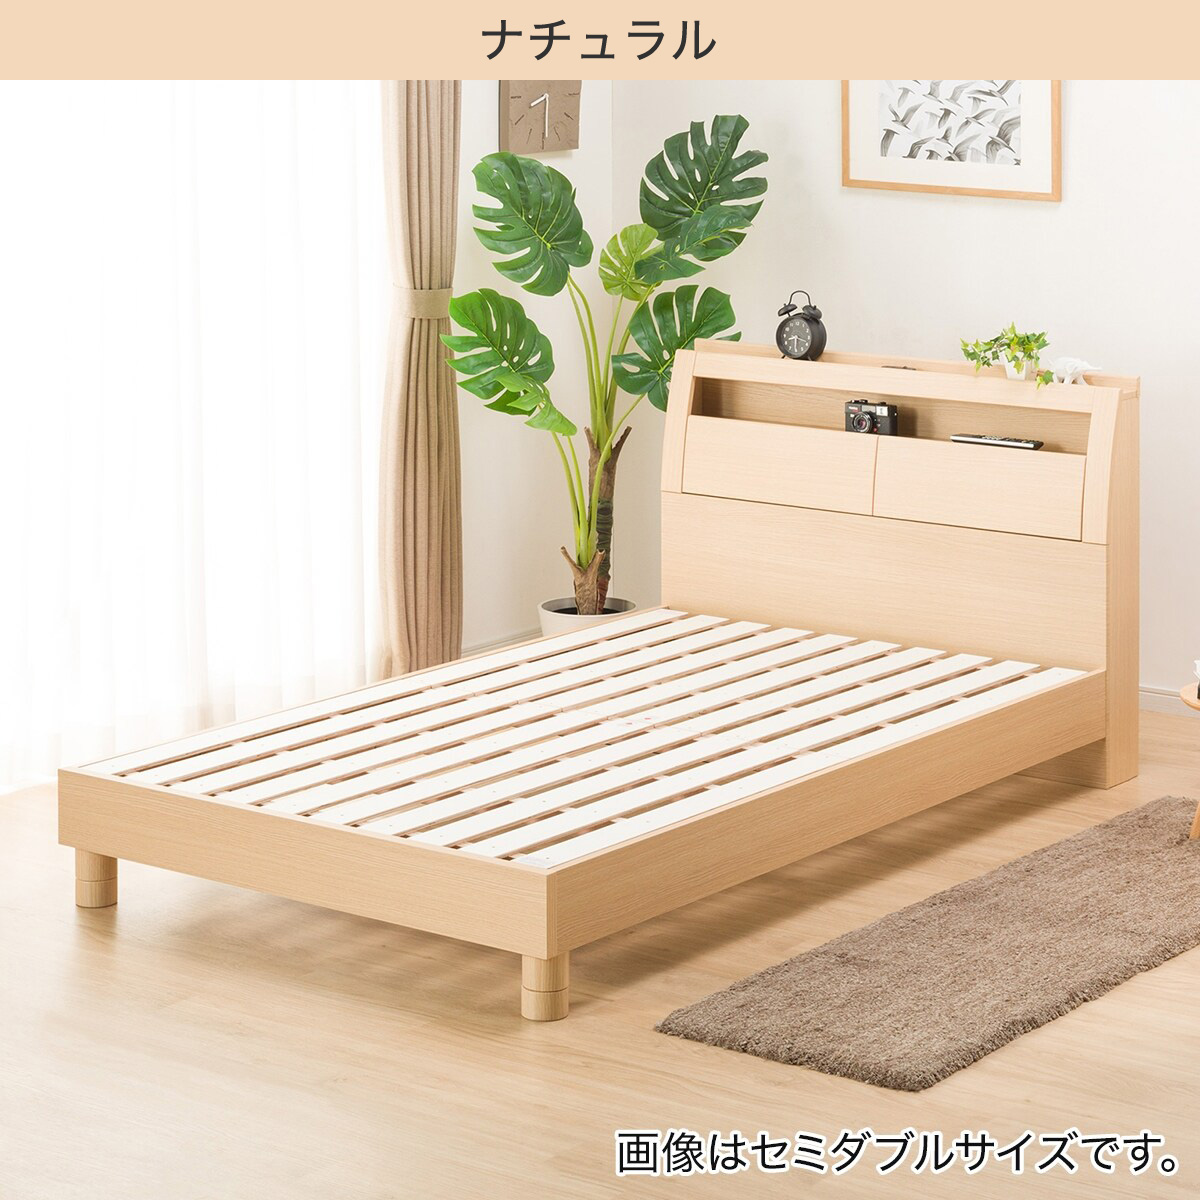 幅140cm] ダブルベッドフレーム(グラン ST) ダブル ベッド ベッド